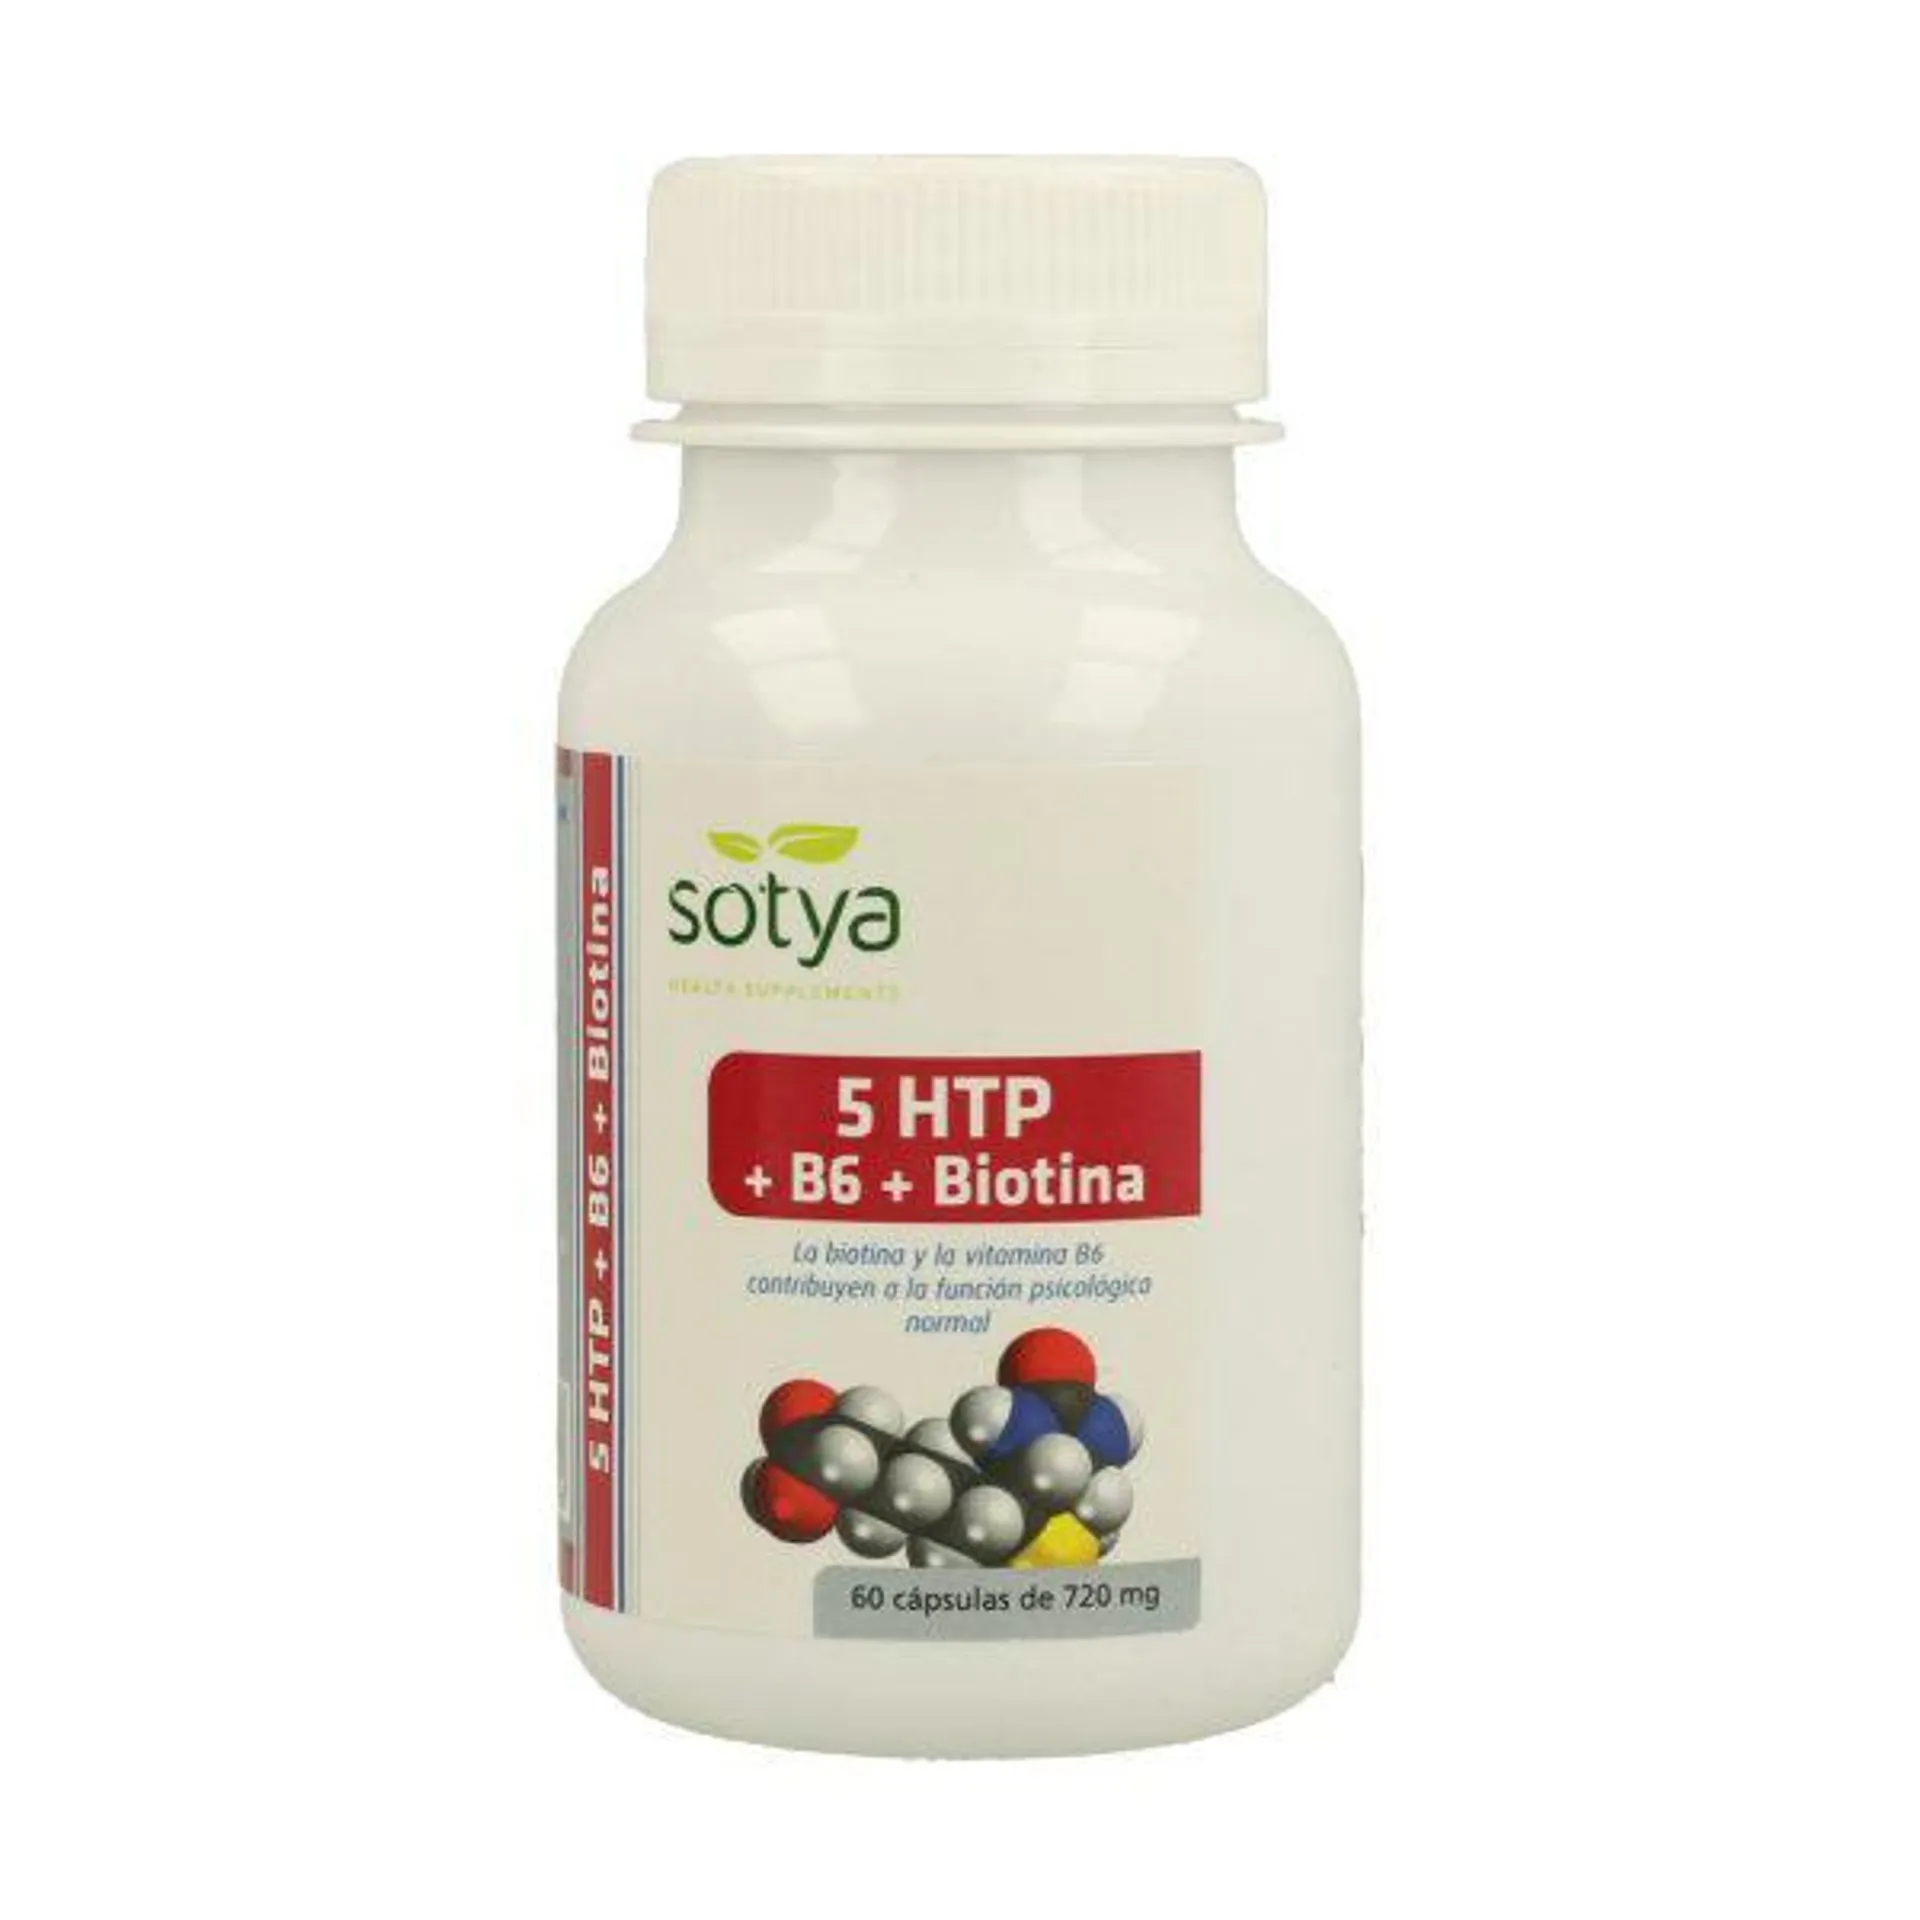 5 HTP + B6 + Biotina (60 cáps) – Sotya